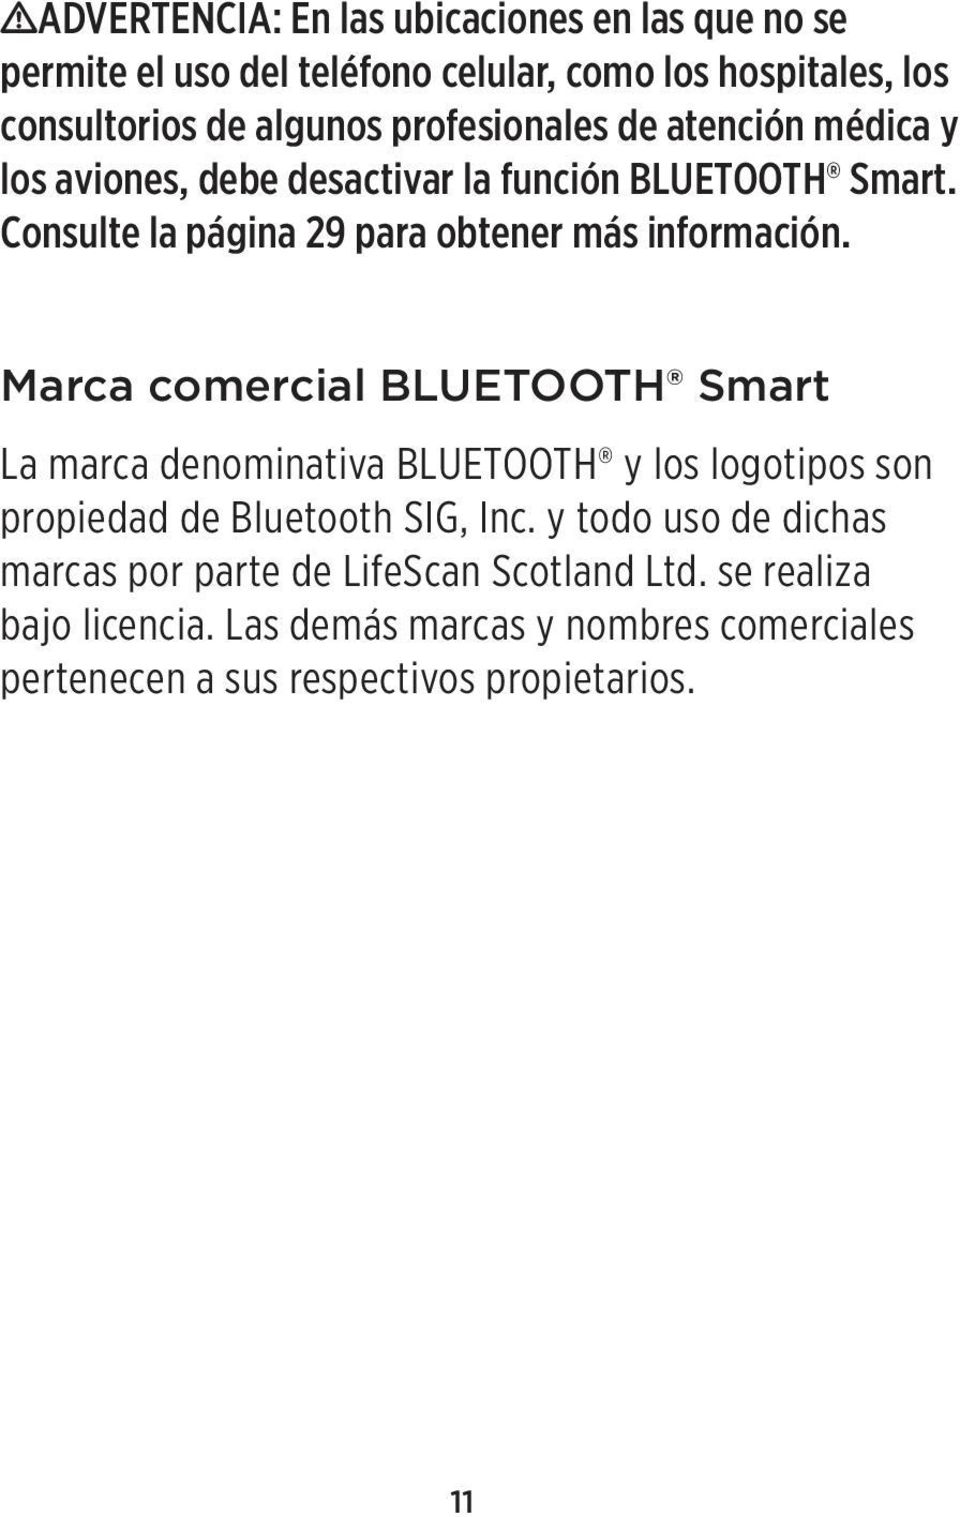 Marca comercial BLUETOOTH Smart La marca denominativa BLUETOOTH y los logotipos son propiedad de Bluetooth SIG, Inc.